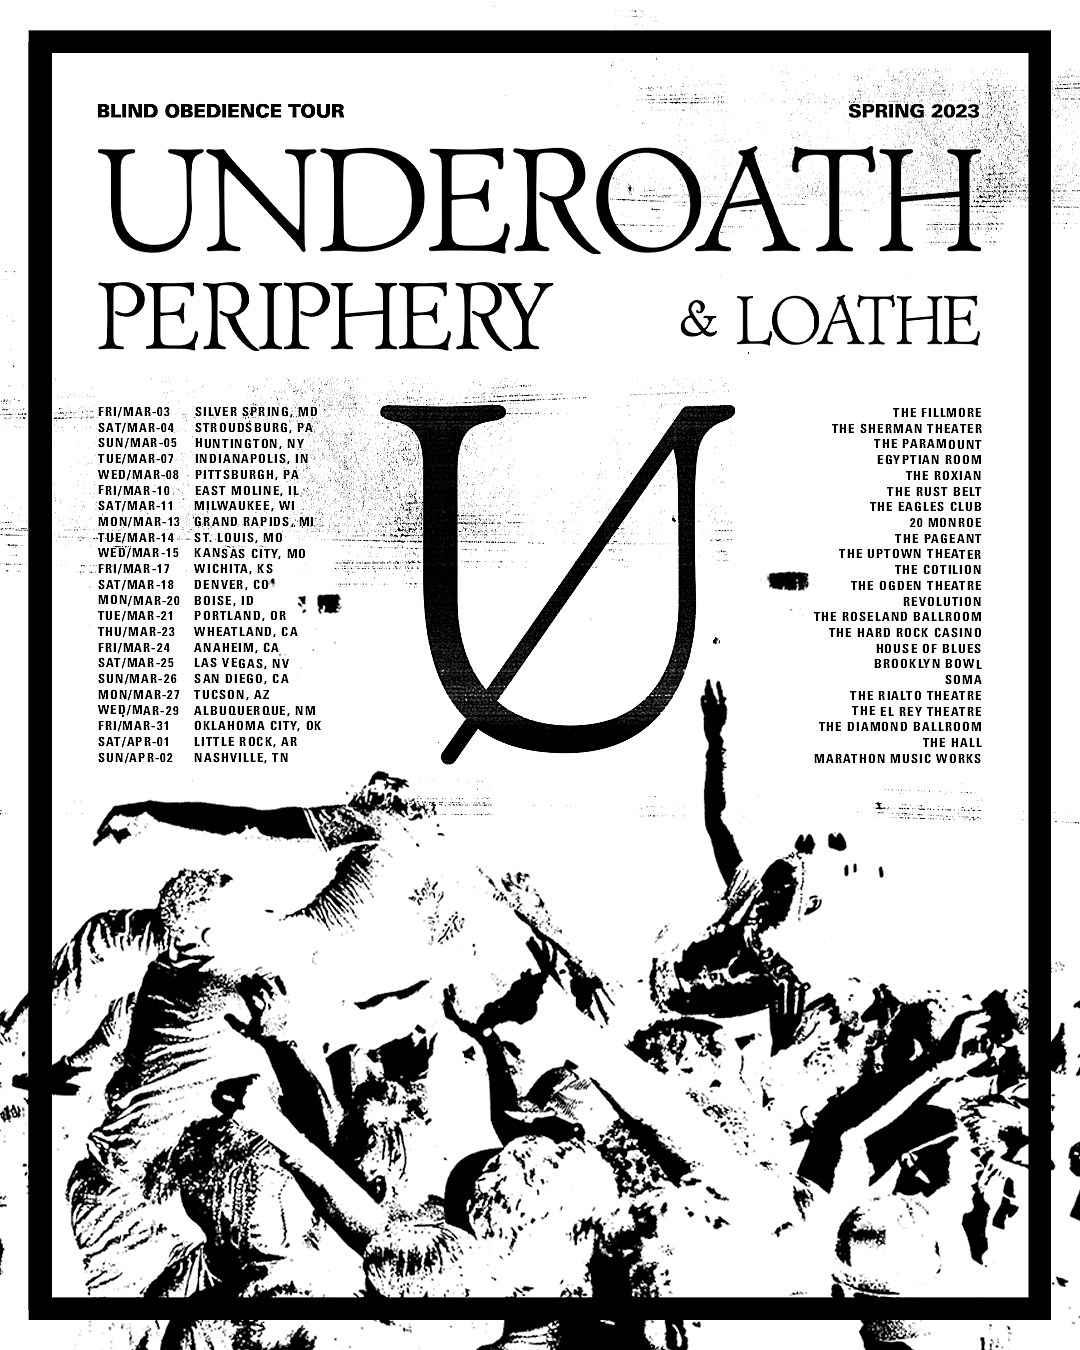 underoath 2023 tour dates